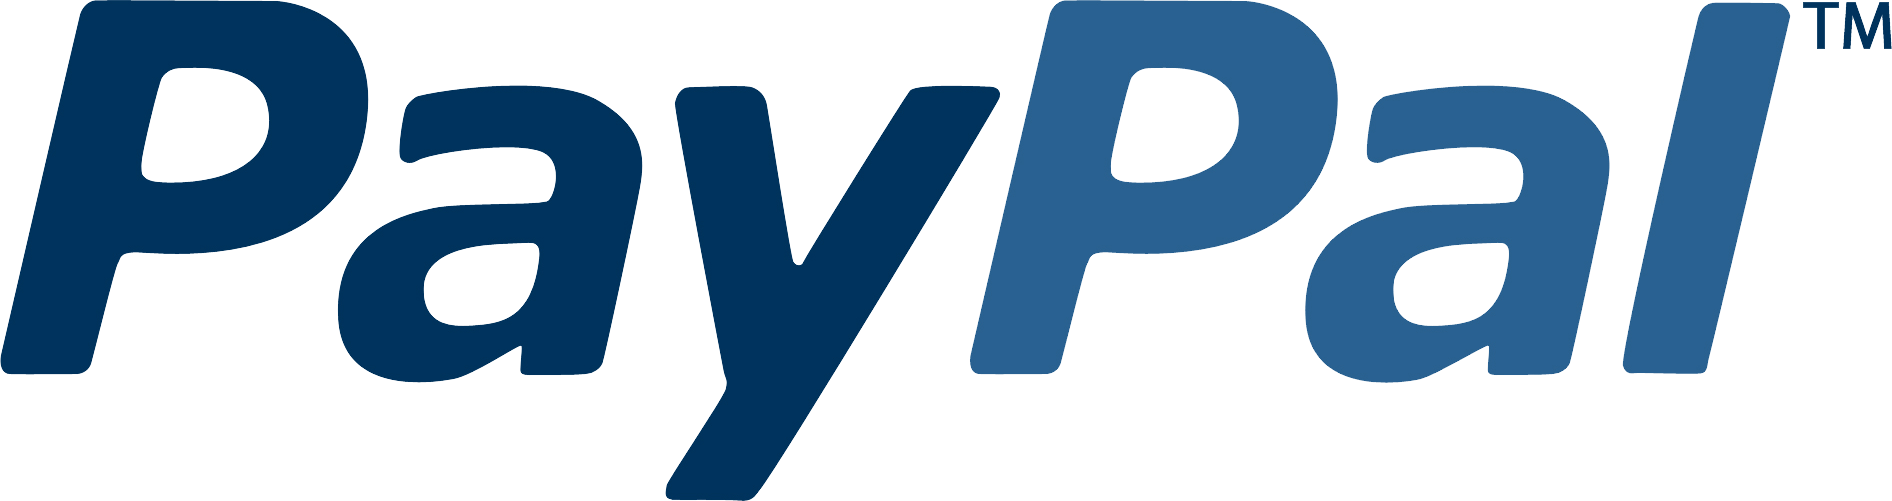 paypal logo png #2143